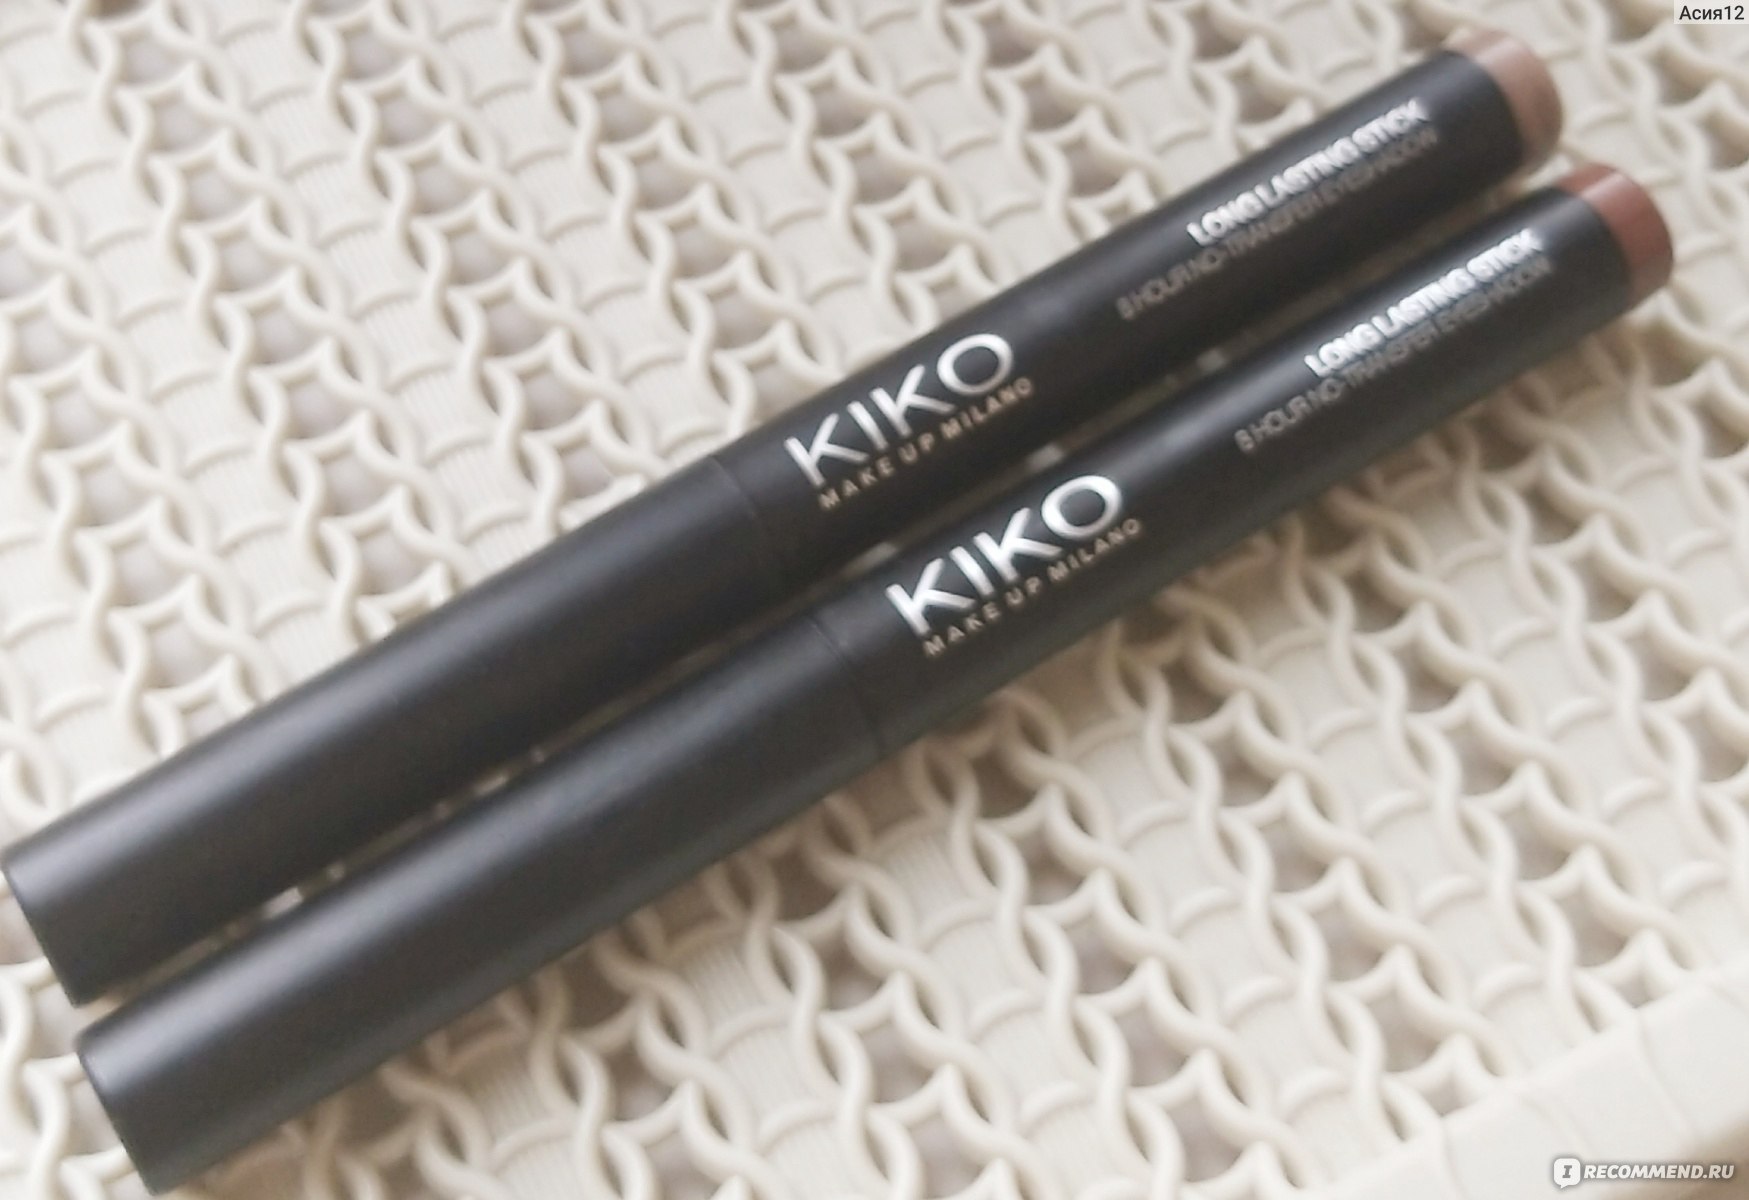 Kiko stick eyeshadow. Кико Милано тени карандаш. Косметика Кико тени карандаш. Kiko тени в стике. Kiko Milano тени стик.